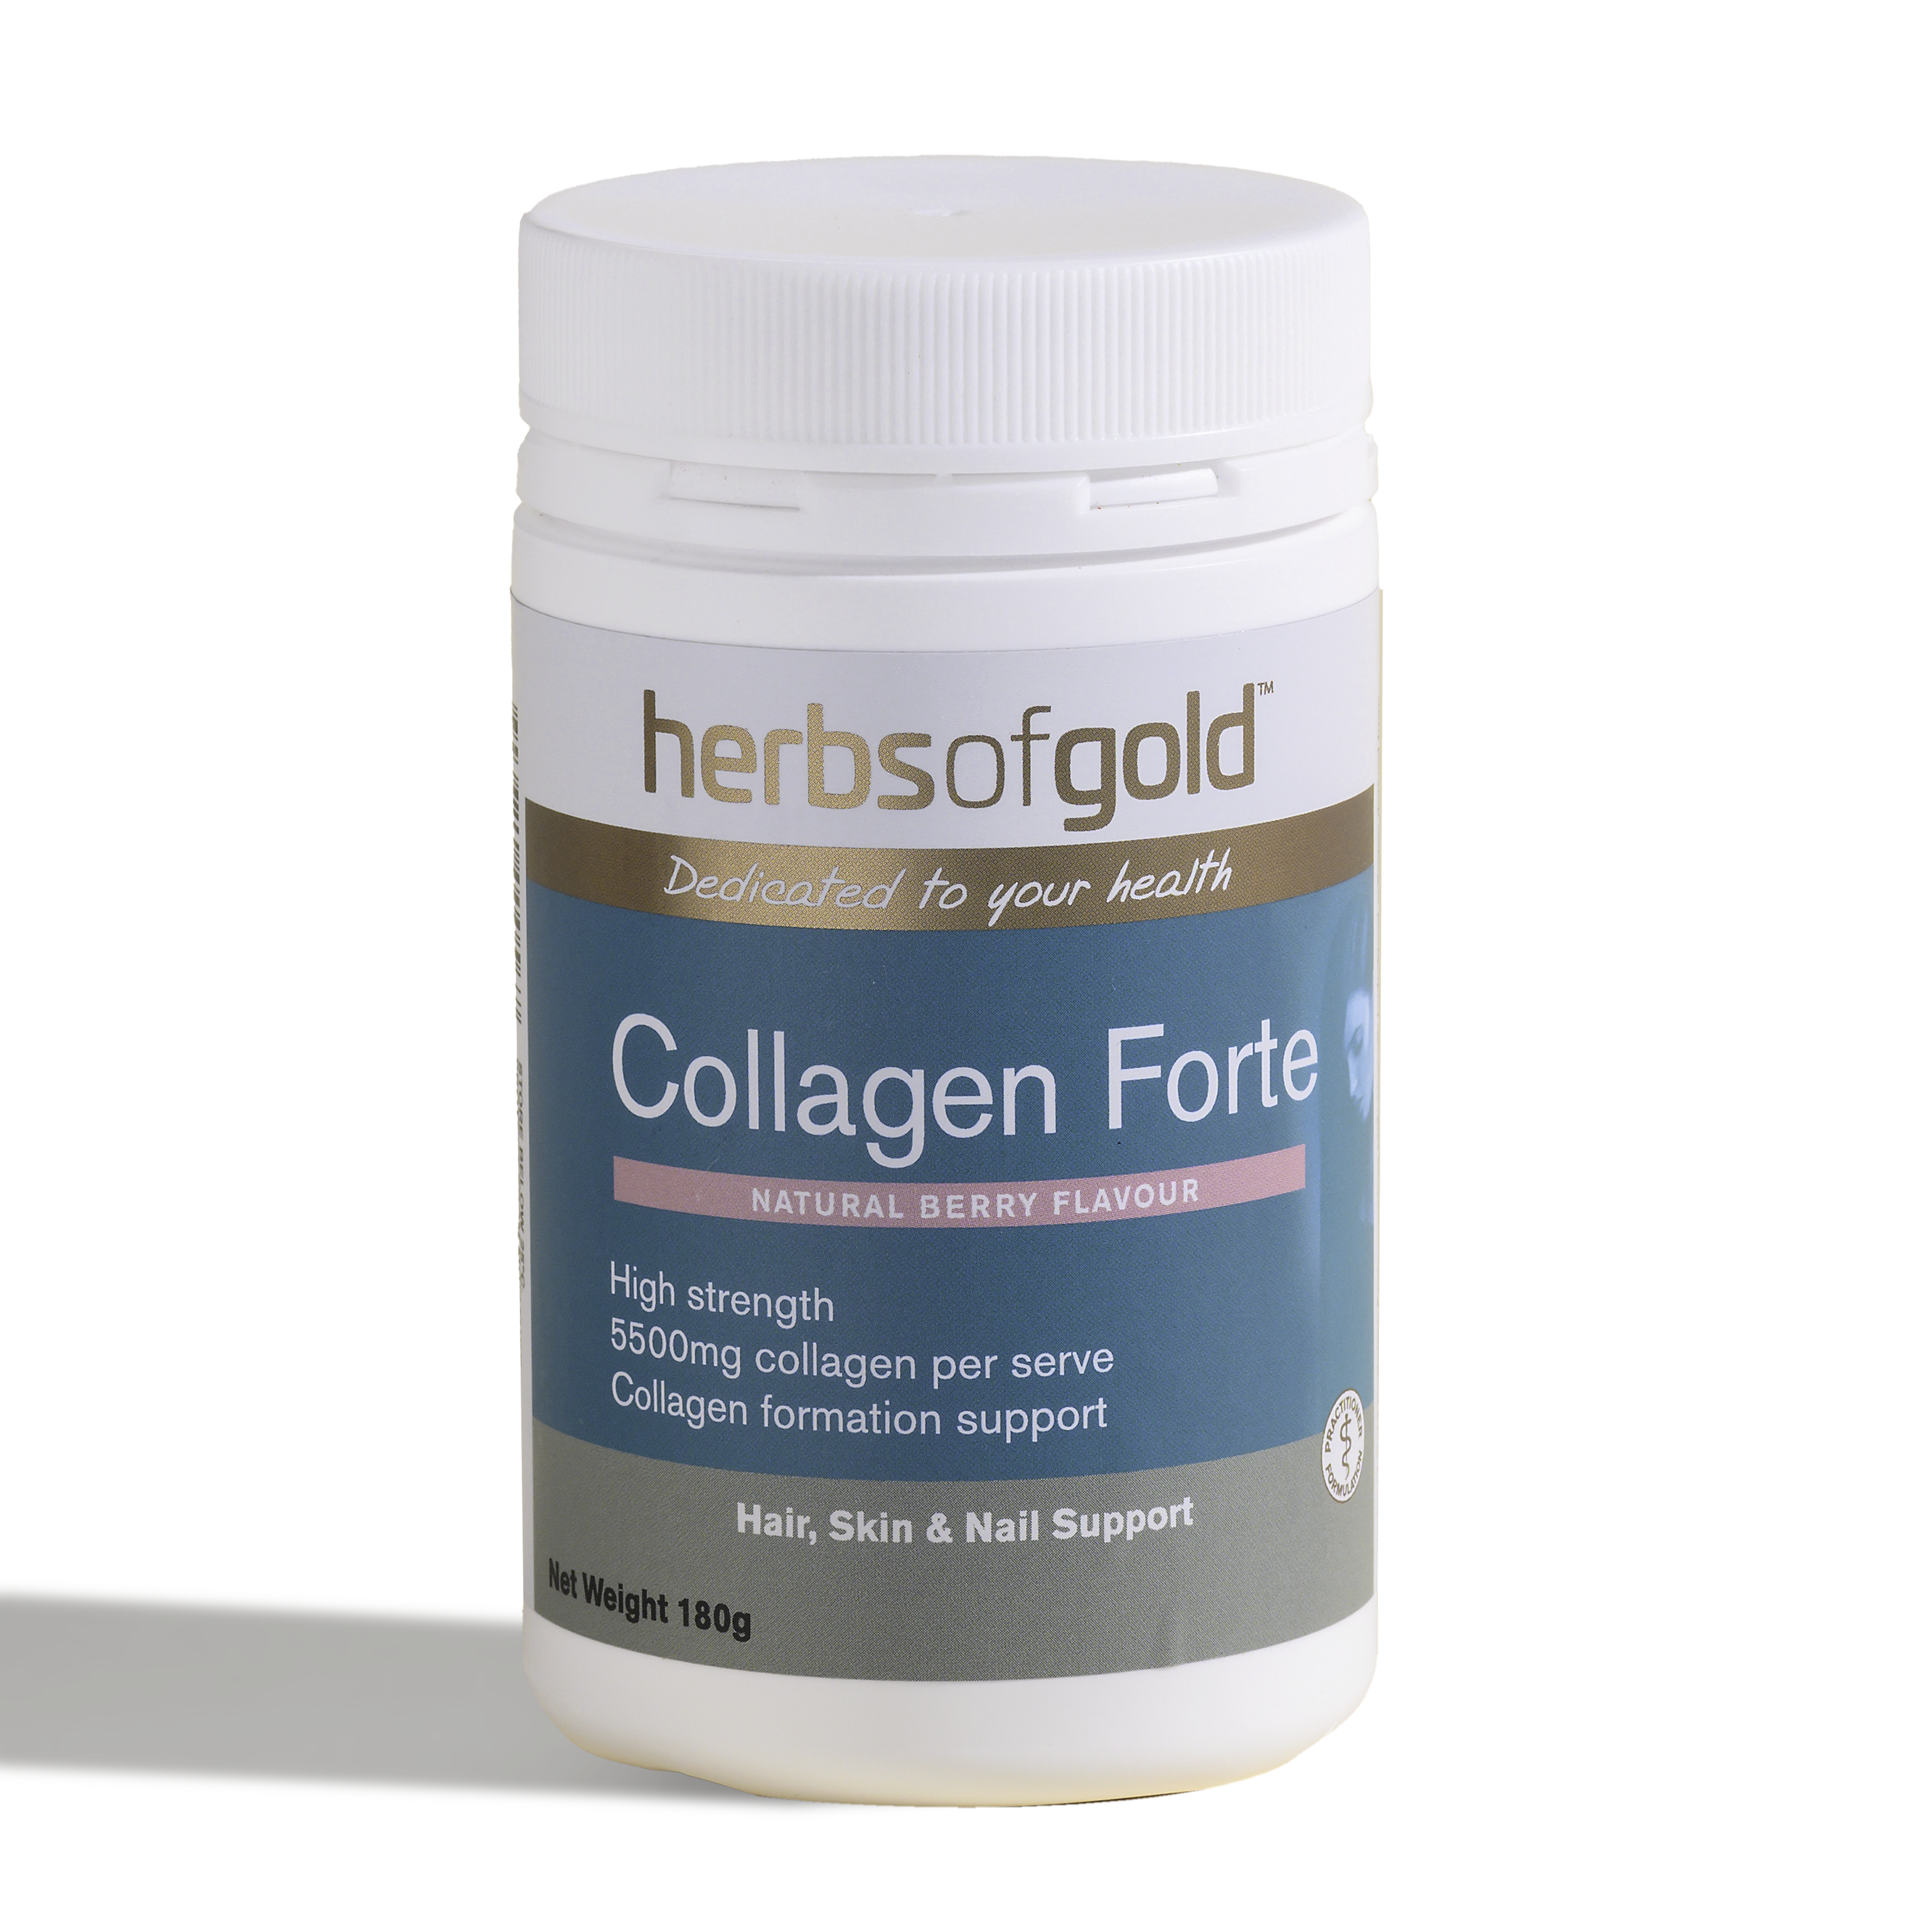 Collagen Forte